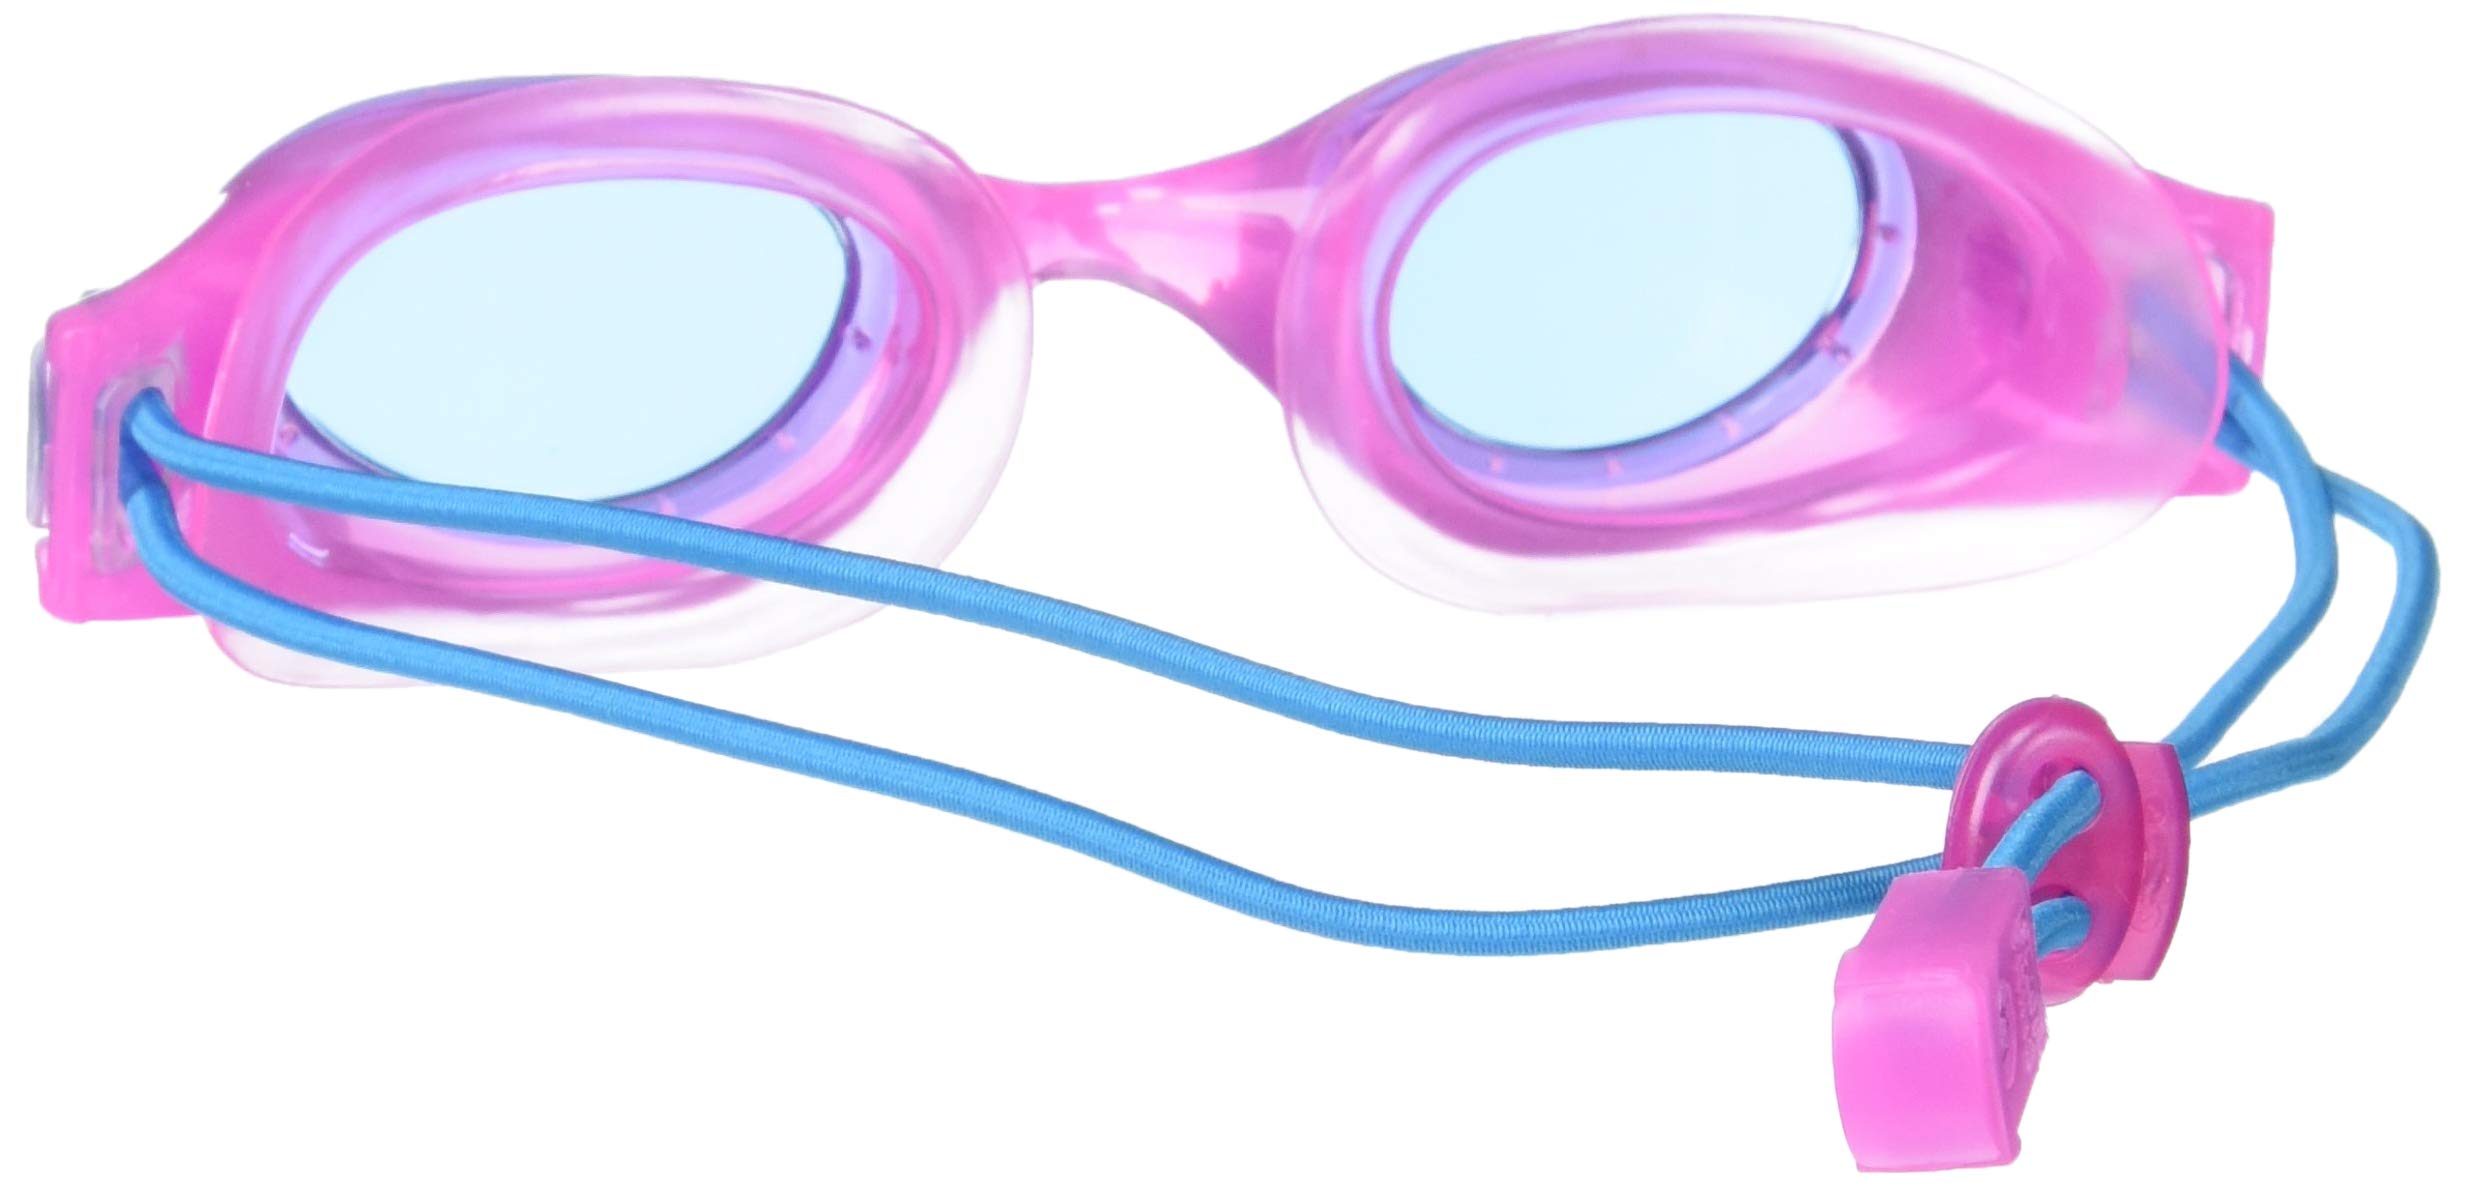 Speedo Unisex-child Swim Goggles Hydrospex Bungee Junior Ages 6-14 , Fuchsia/Cobalt